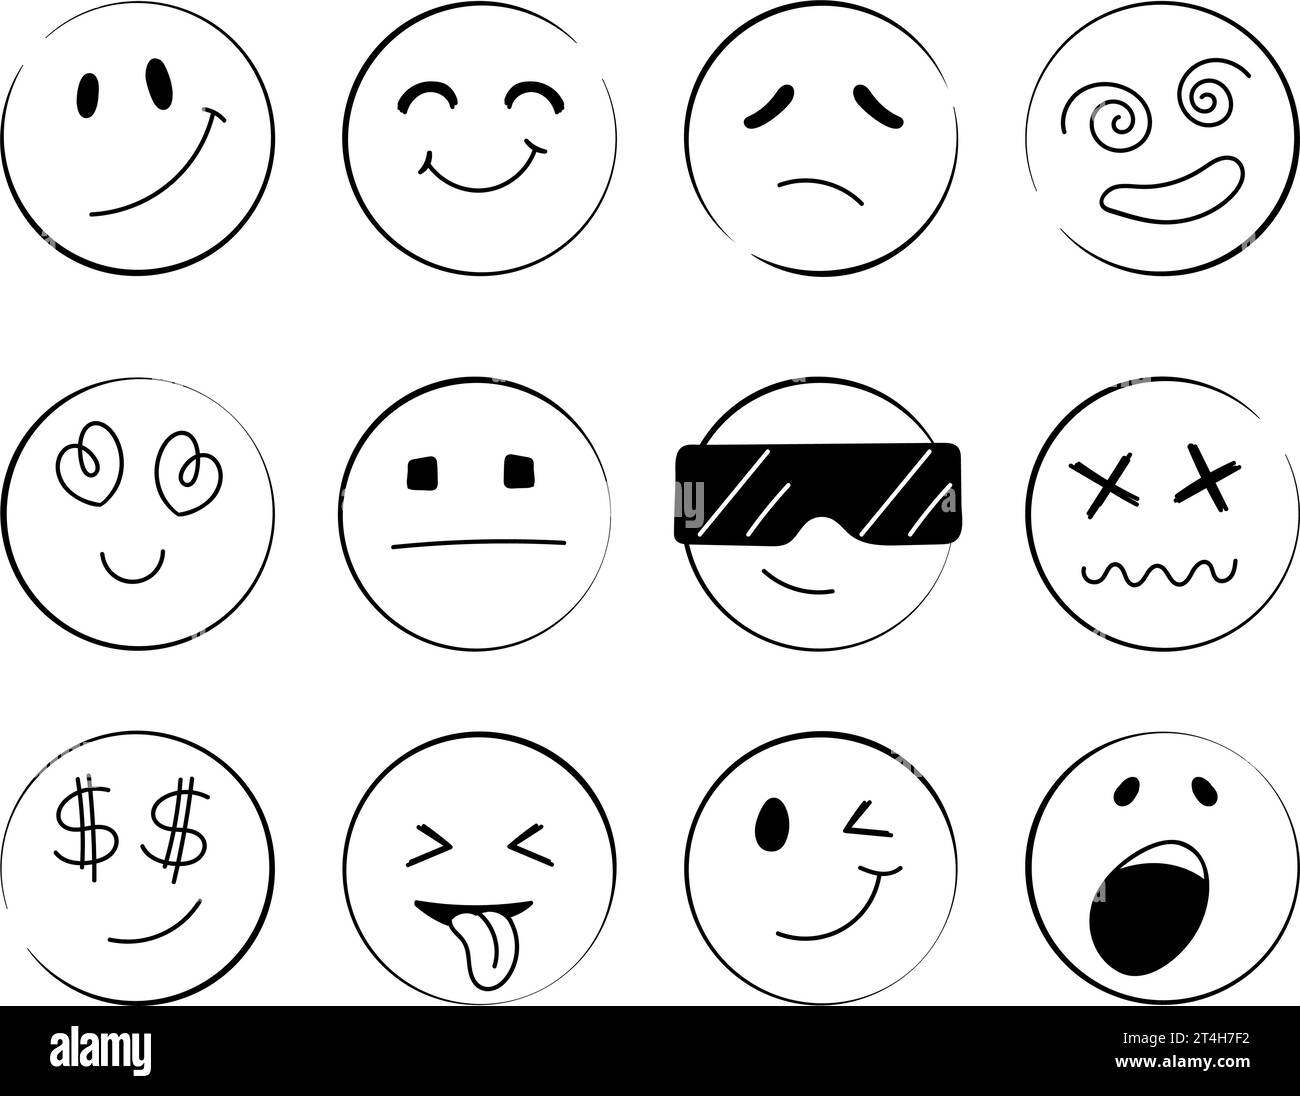 Doodle Emoji Face Icons Set. Caras redondas. Emoji con diferentes estados de ánimo emocionales, cara feliz, triste, sonriente. Cómic ilustración vectorial. Ilustración del Vector